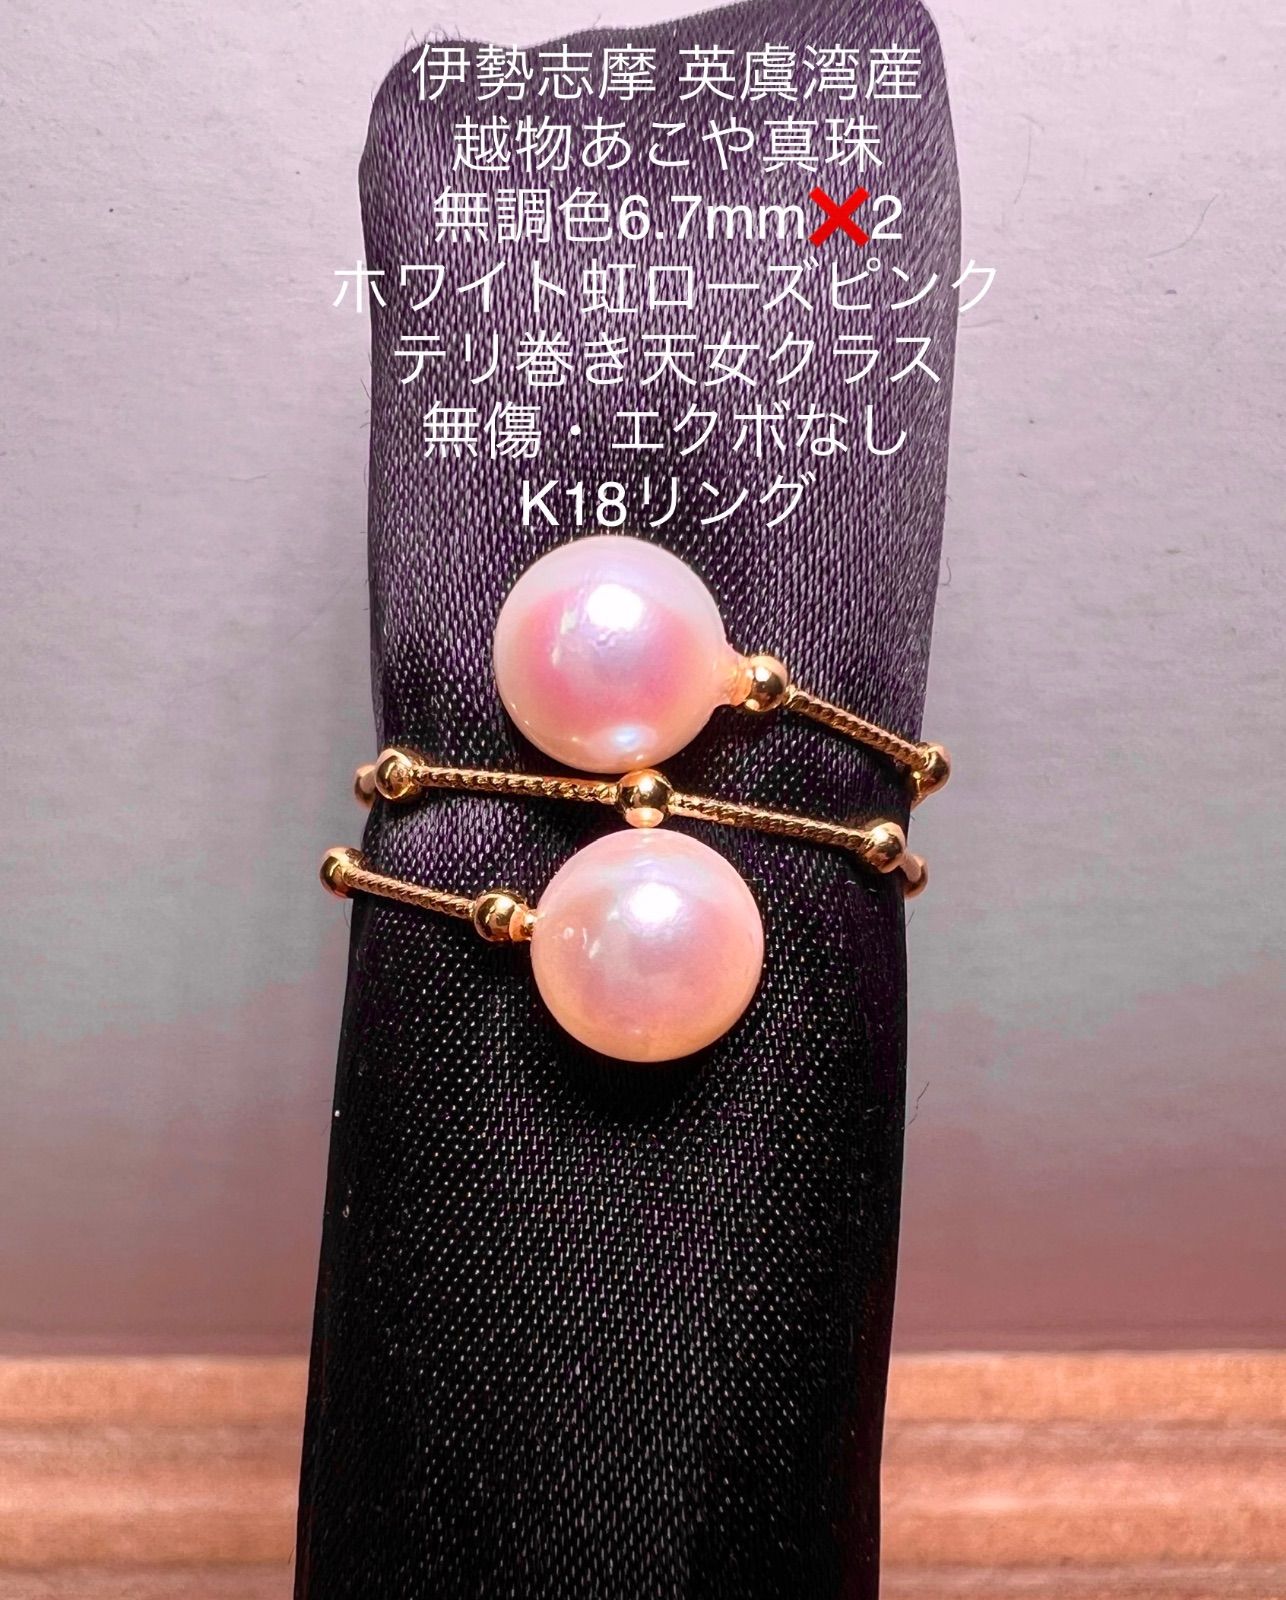 伊勢志摩 英虞湾産 あこや真珠オーロラ天女8.5mm ホワイト虹ピンク 